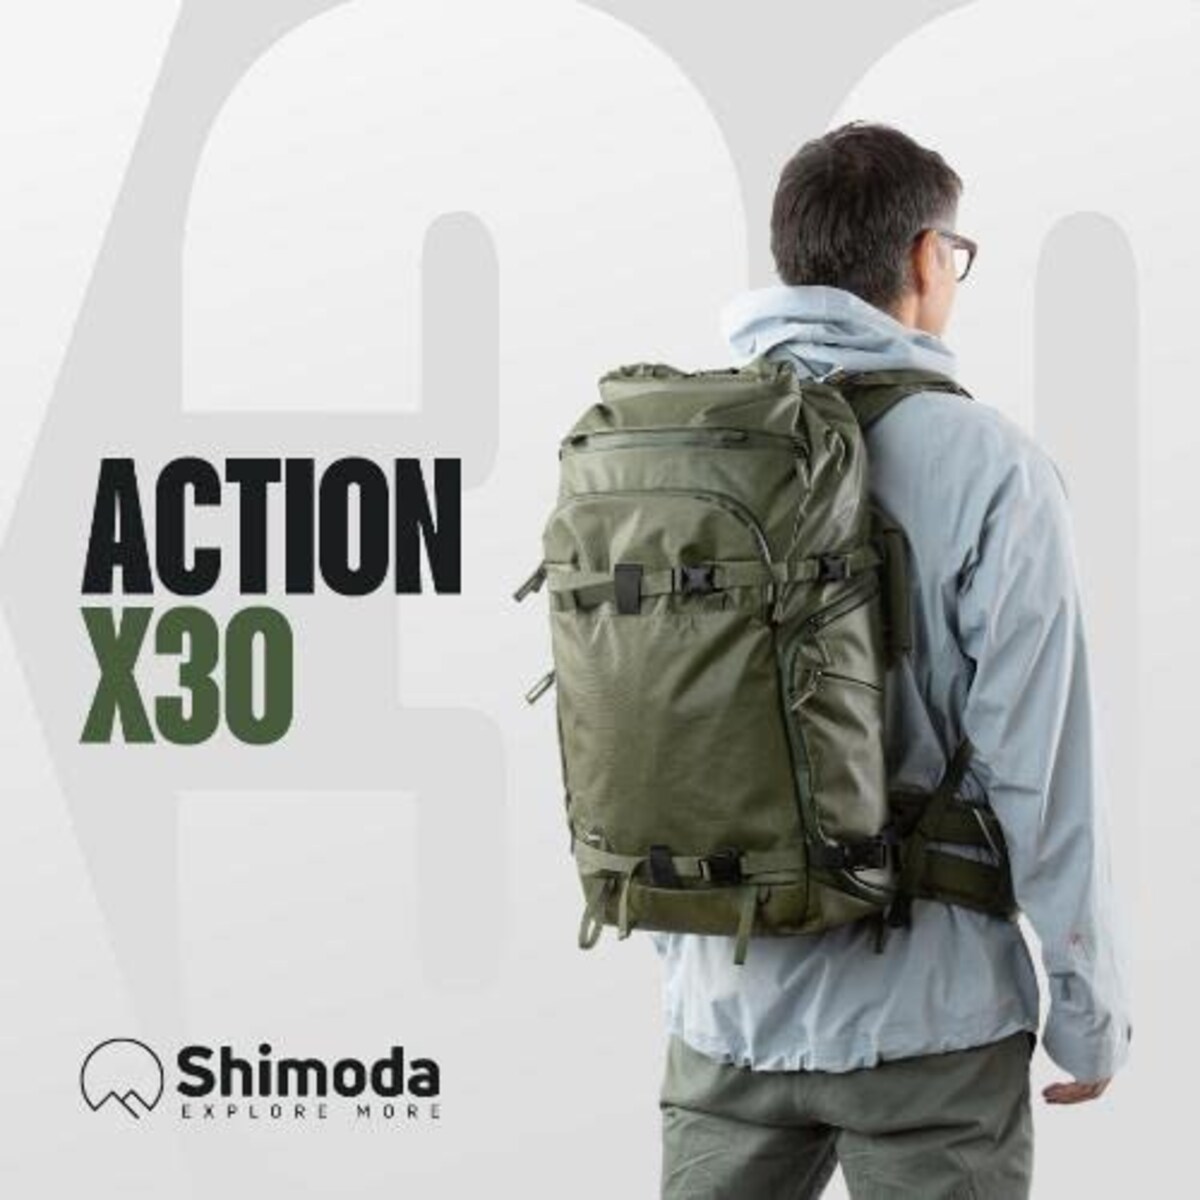  Shimoda Designs アクション X30 バックパック 23L ブラック V520-100画像3 